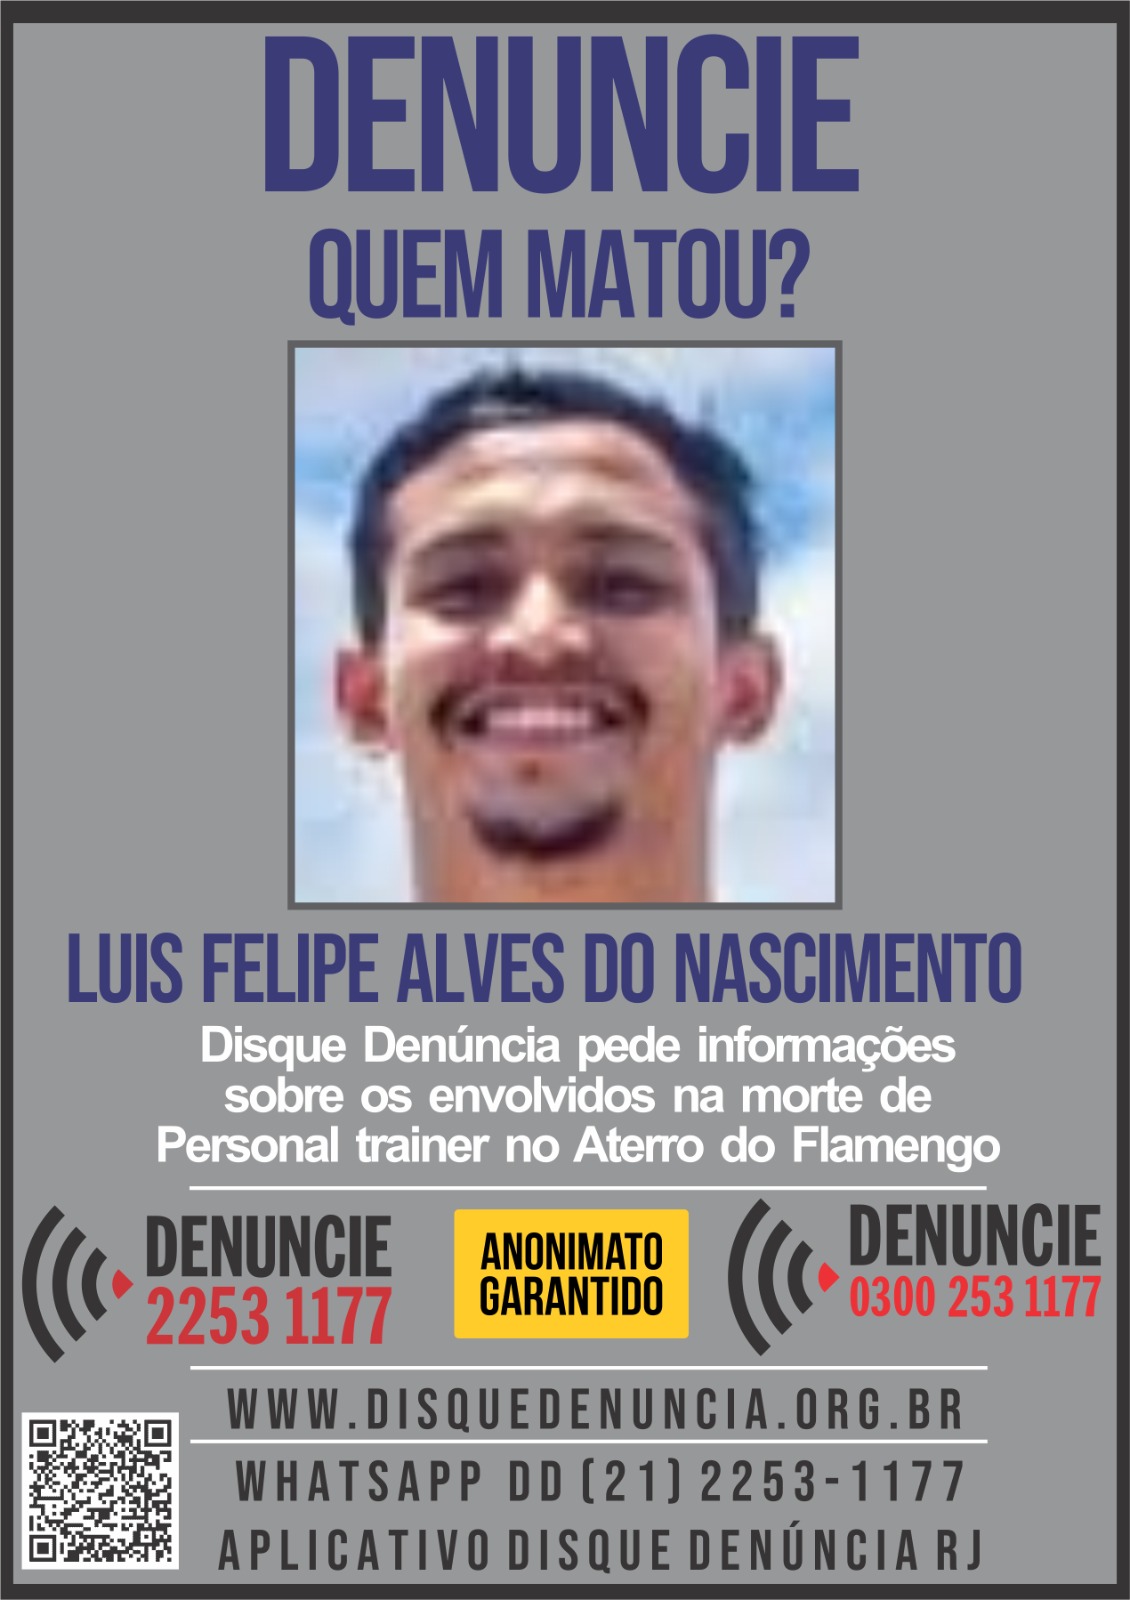 Disque Denúncia pede informações sobre assassinos de personal trainer no Rio